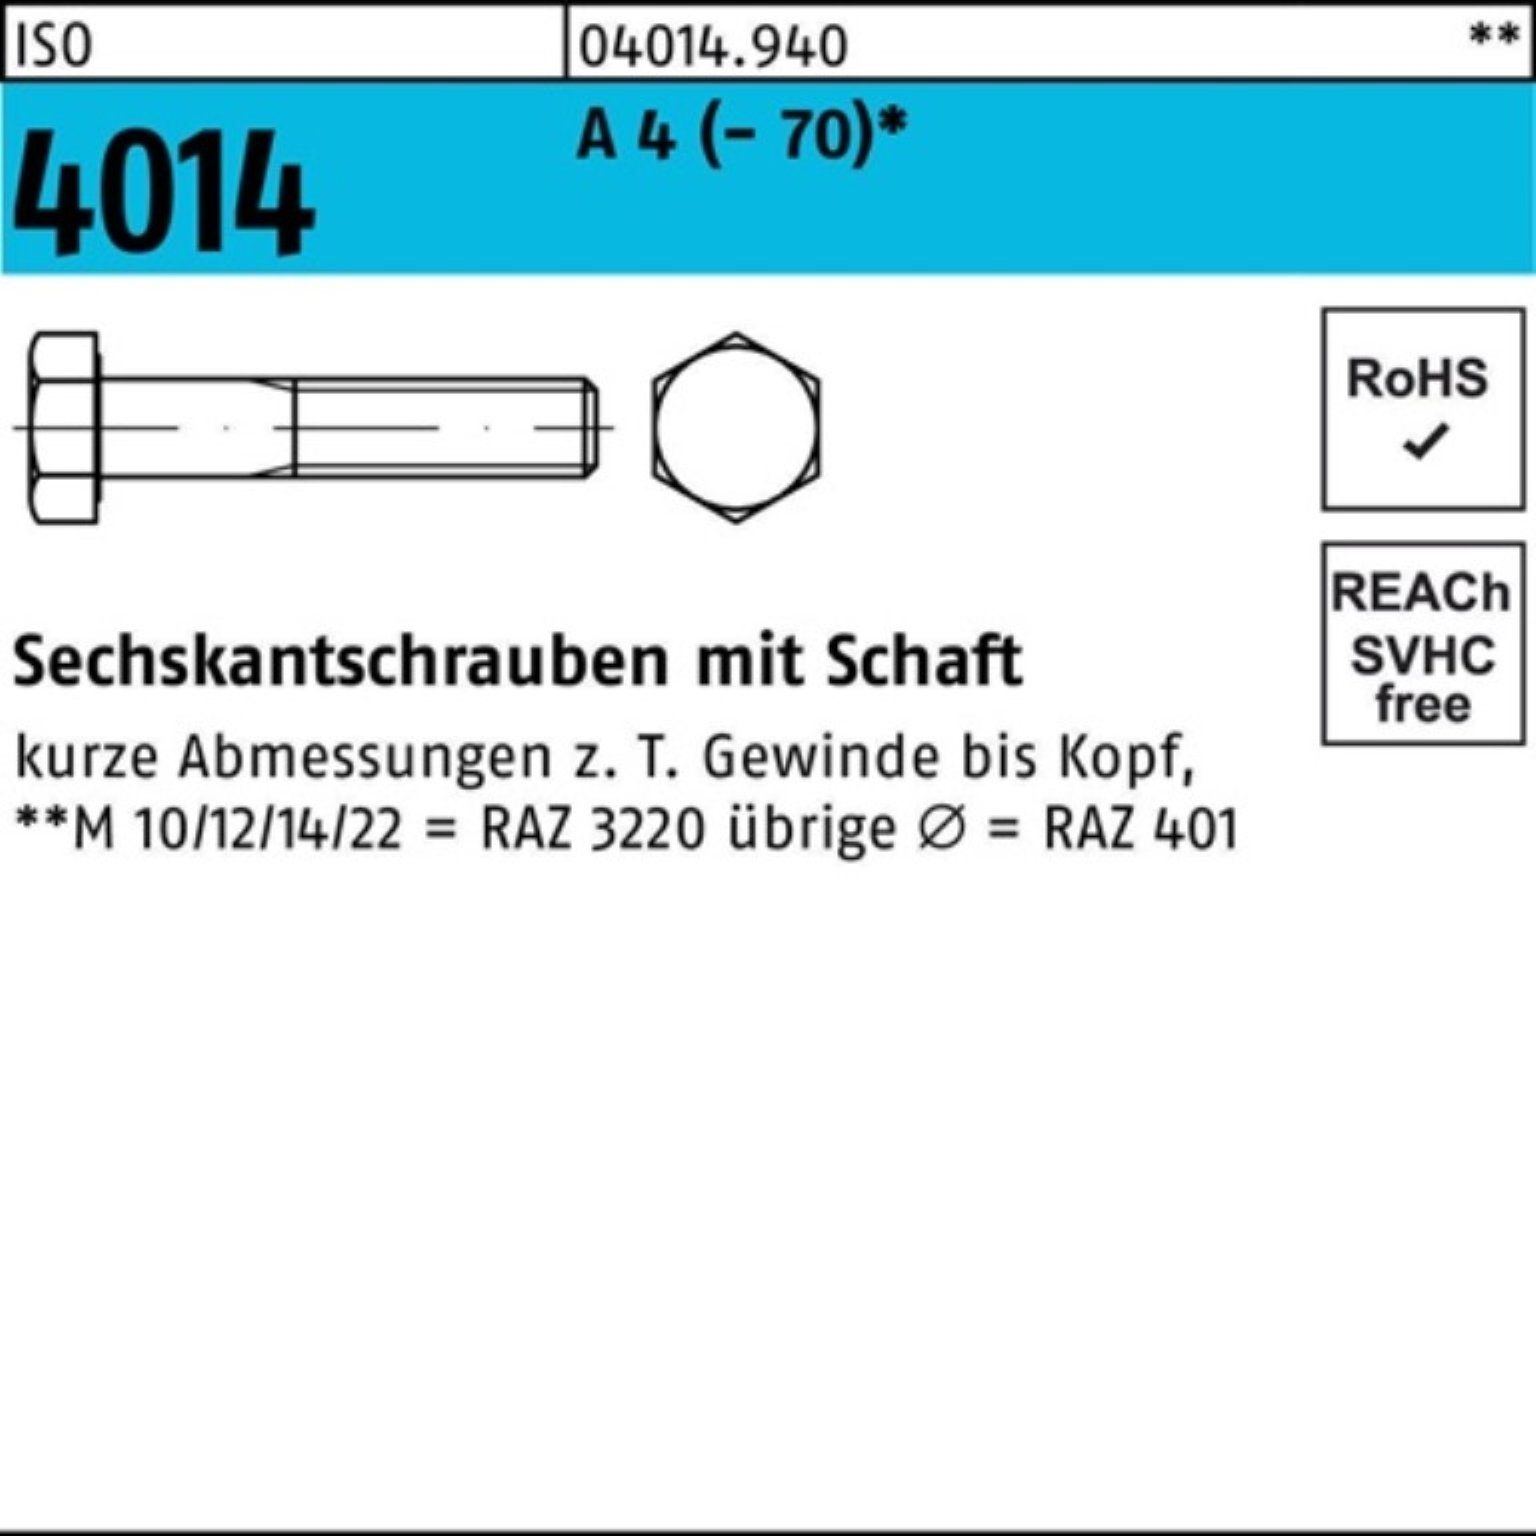 Bufab Sechskantschraube 100er 4014 4 (70) A Pack St ISO M18x Schaft 1 Sechskantschraube 120